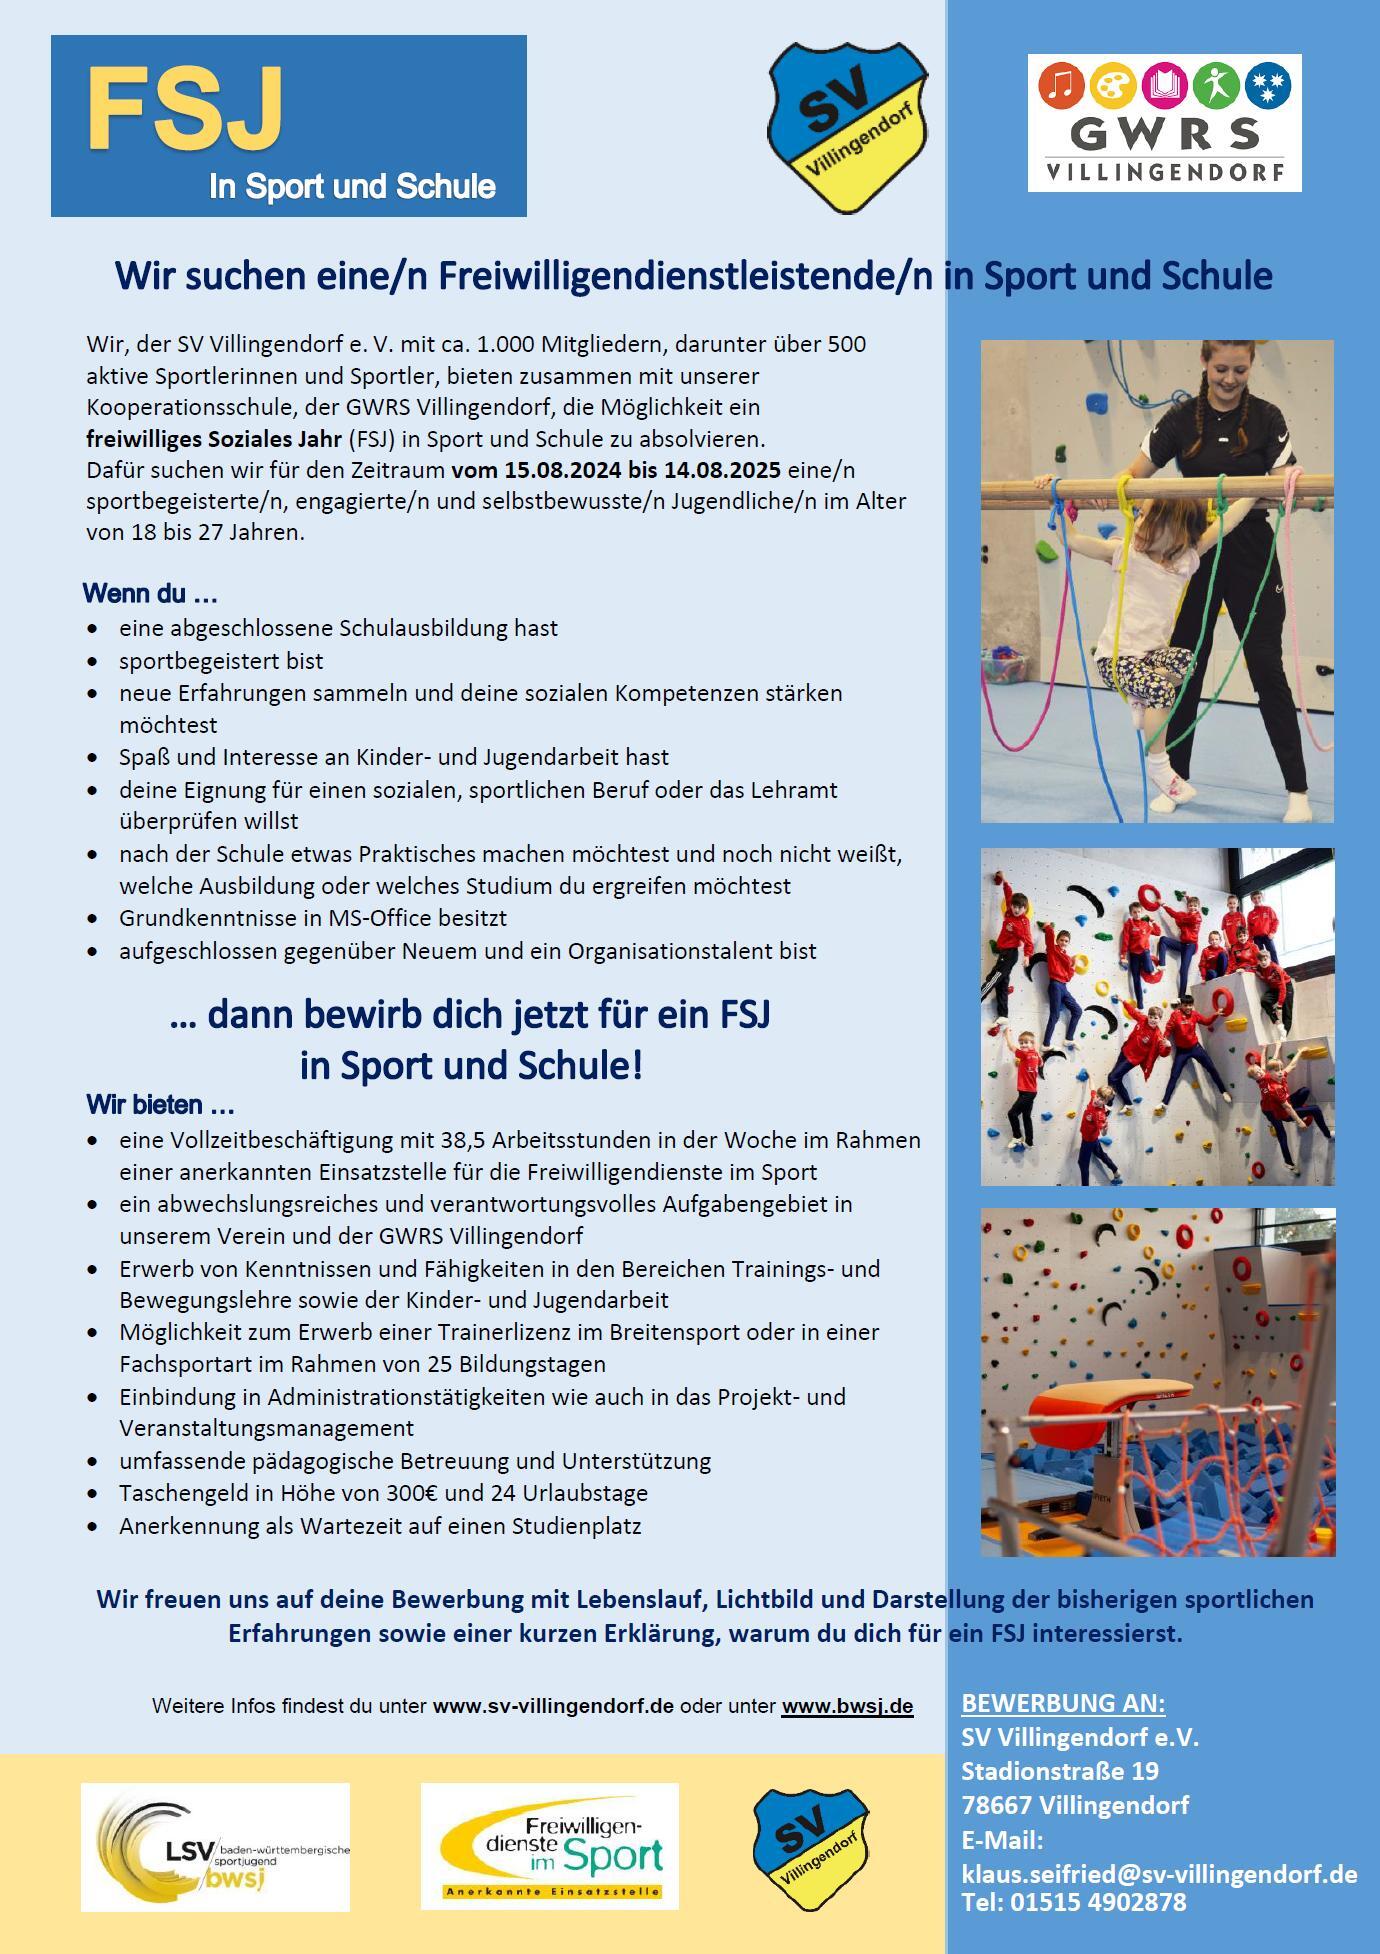 Freiwilliges Soziales Jahr (FSJ) in Sport und Schule 2024 / 2025 Villingendorf